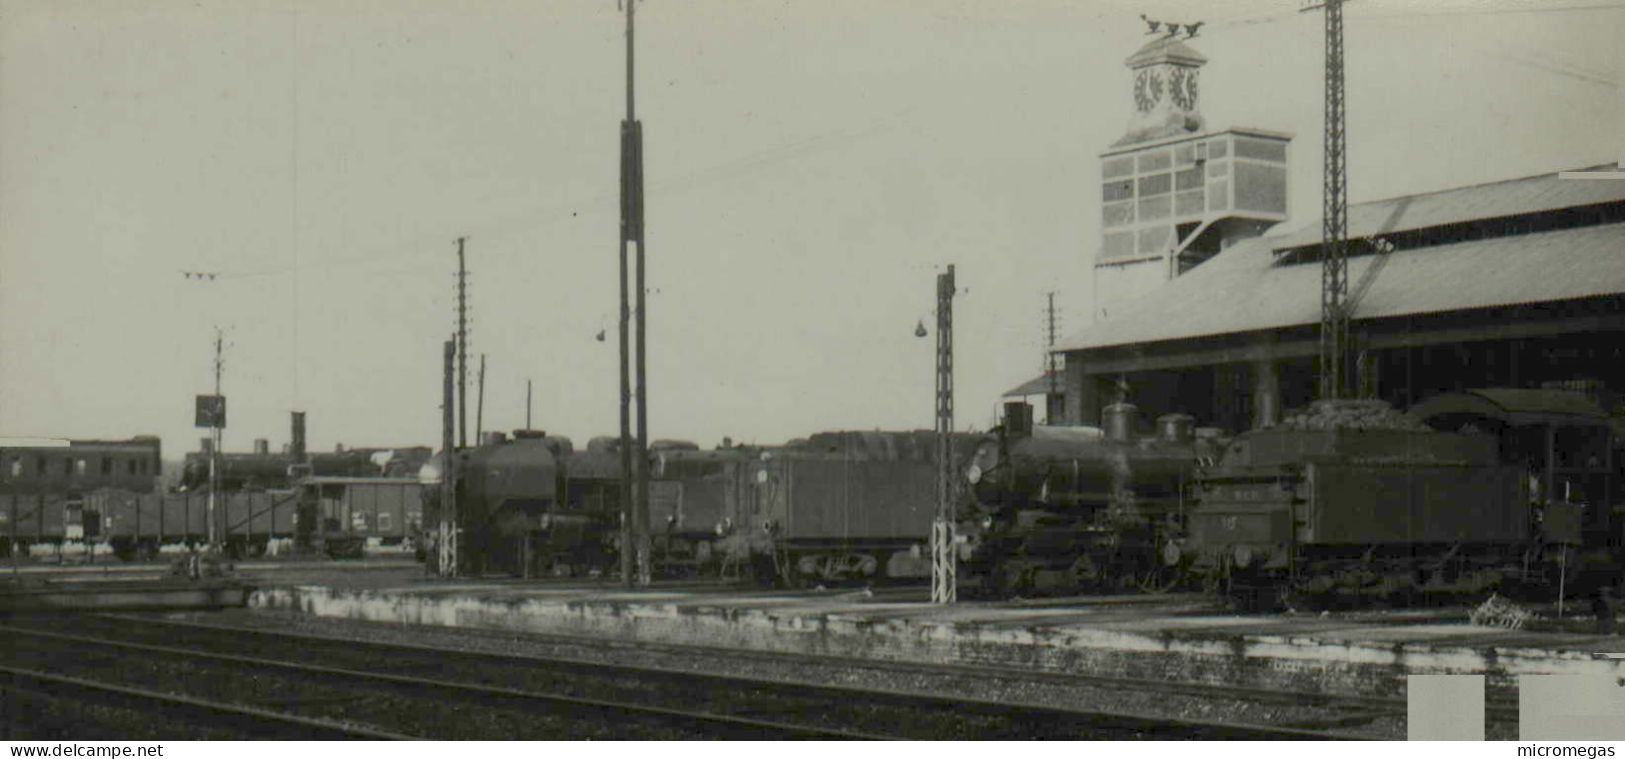 Reproduction - Halls Intermédiaires - Dépôt Amiens, Sept. 1954 - Trains